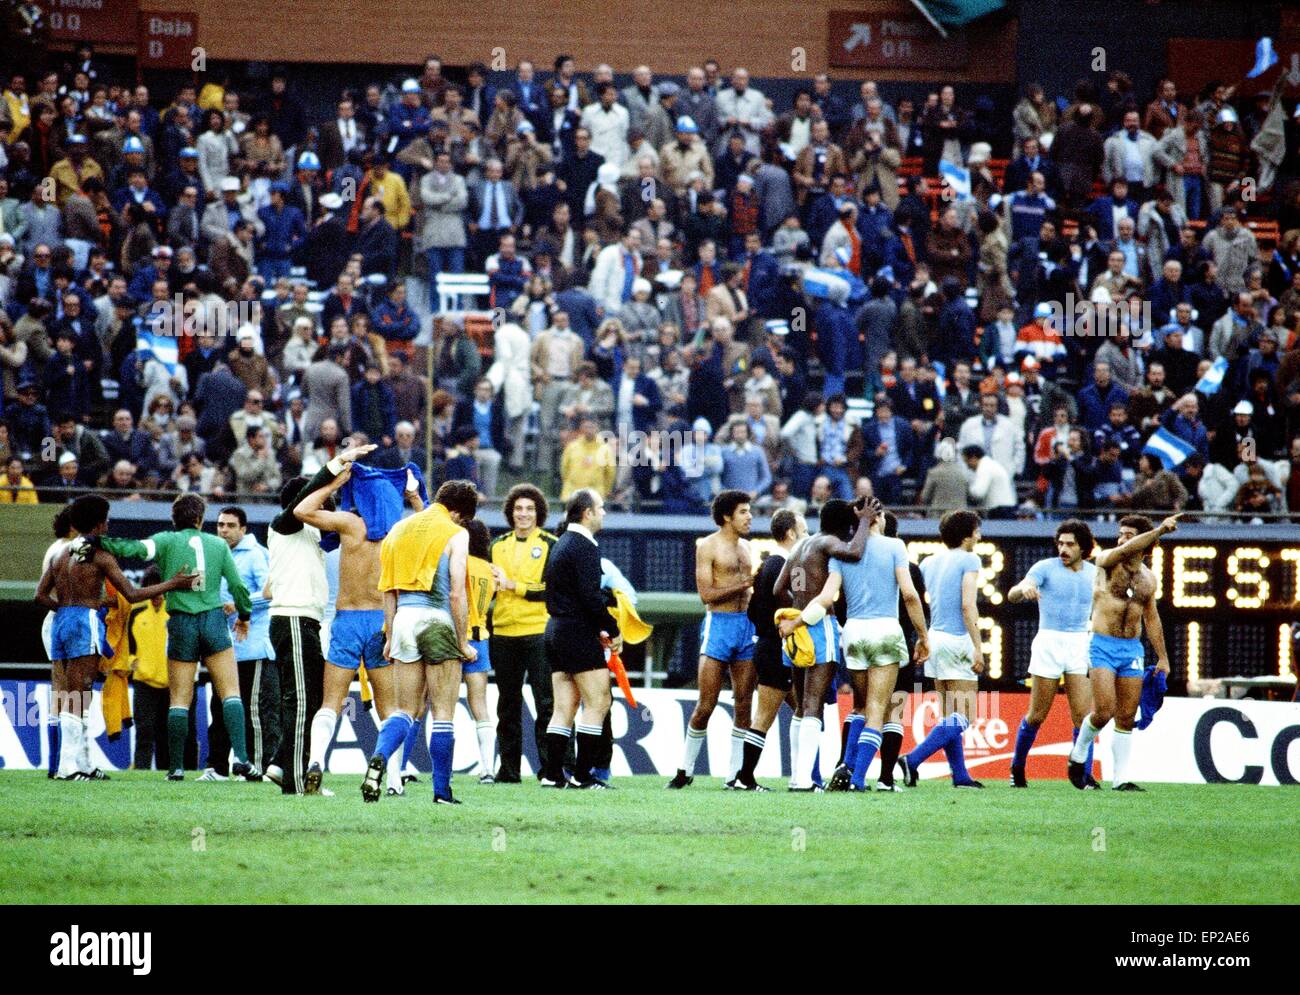 Brasilien / Italien, dritter Stelle übereinstimmen, 1978 FIFA World Cup, Estadio Monumental, Buenos Aires, Argentinien, 24. Juni 1978. Endstand: Brasilien 2: 1 Italien. Spieler tauschen Hemden am Ende des Spiels. Dino Zoff (Bild links). Stockfoto